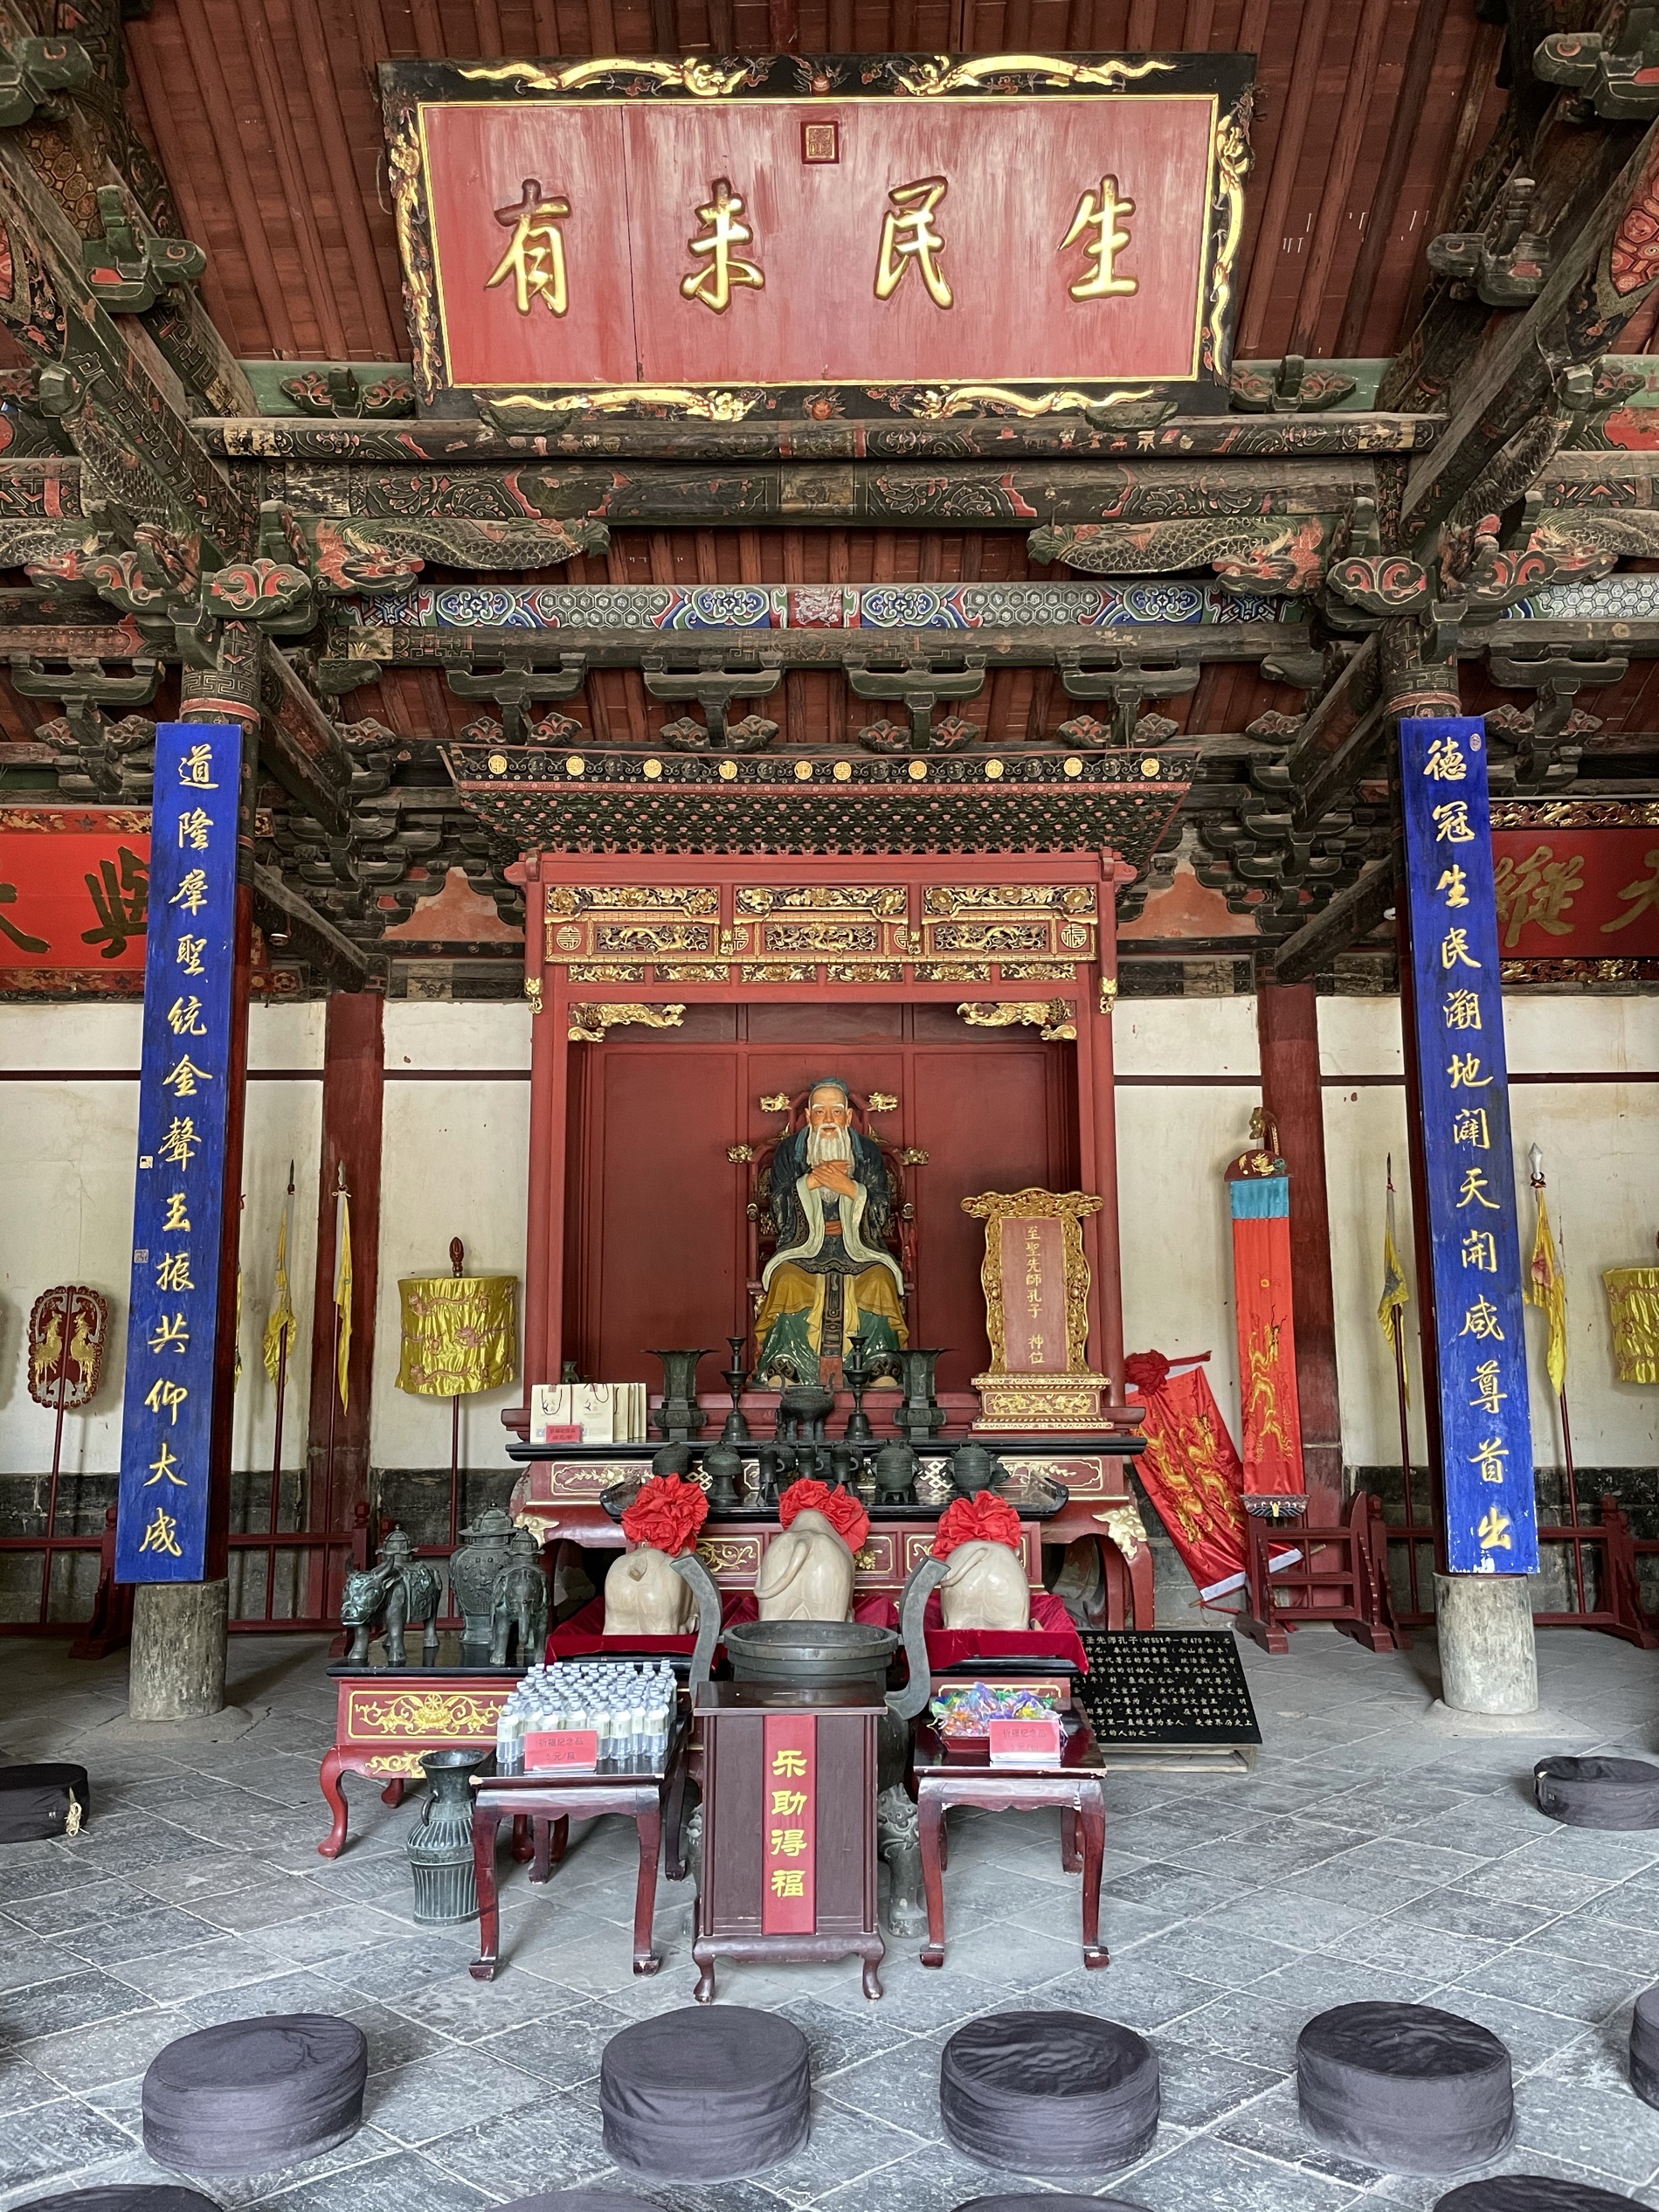 inside confucius temple